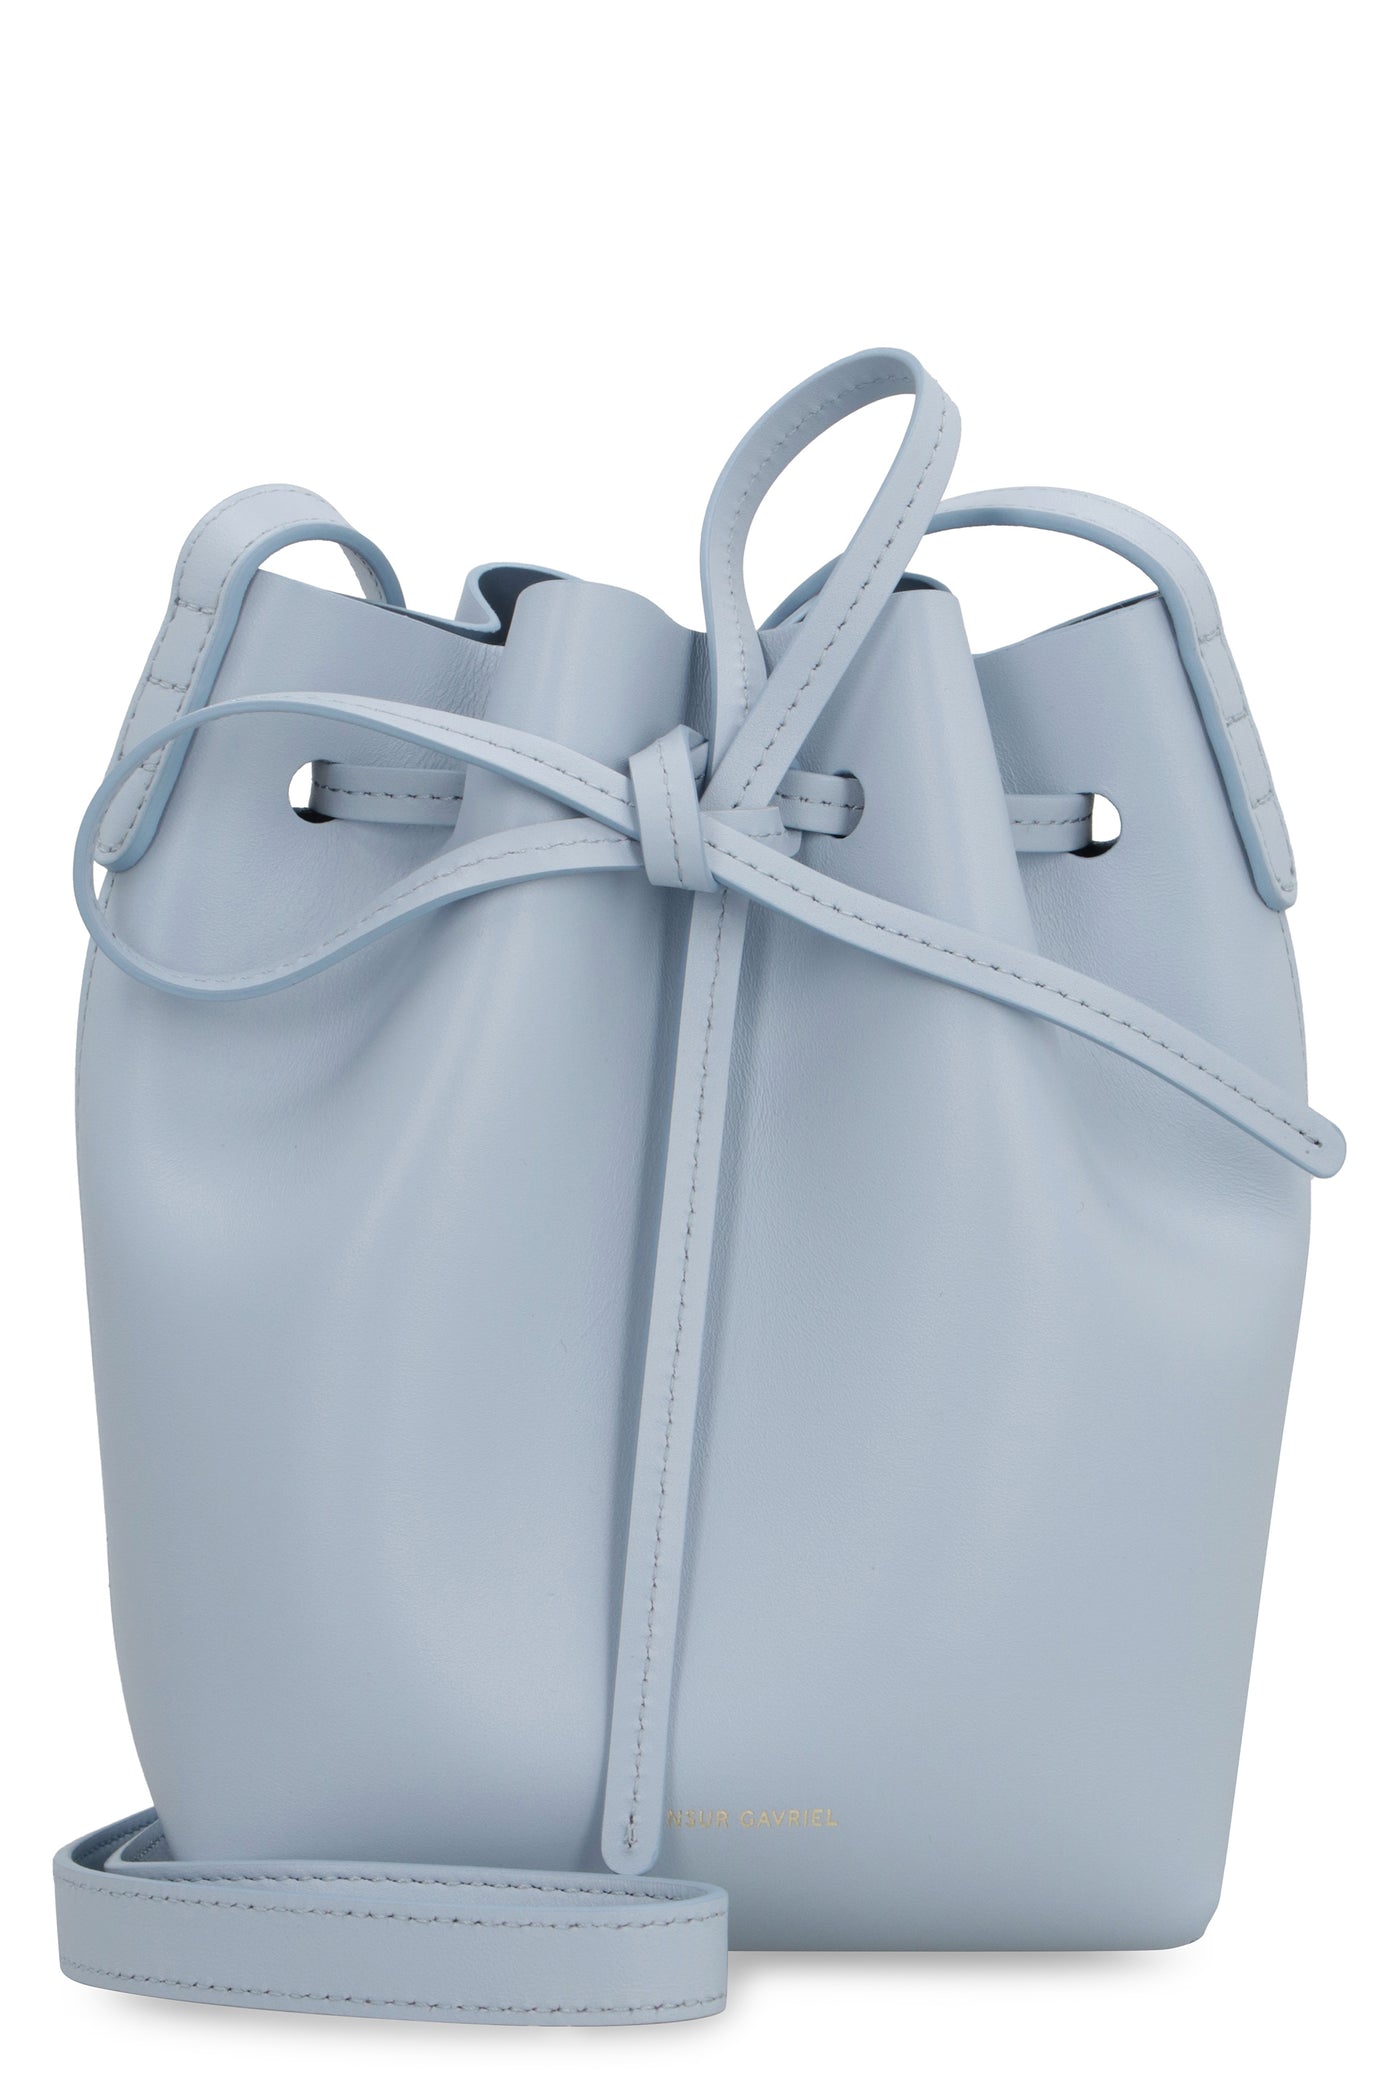 Mansur Gavriel Mini Saffiano Leather Bucket Bag in Natural